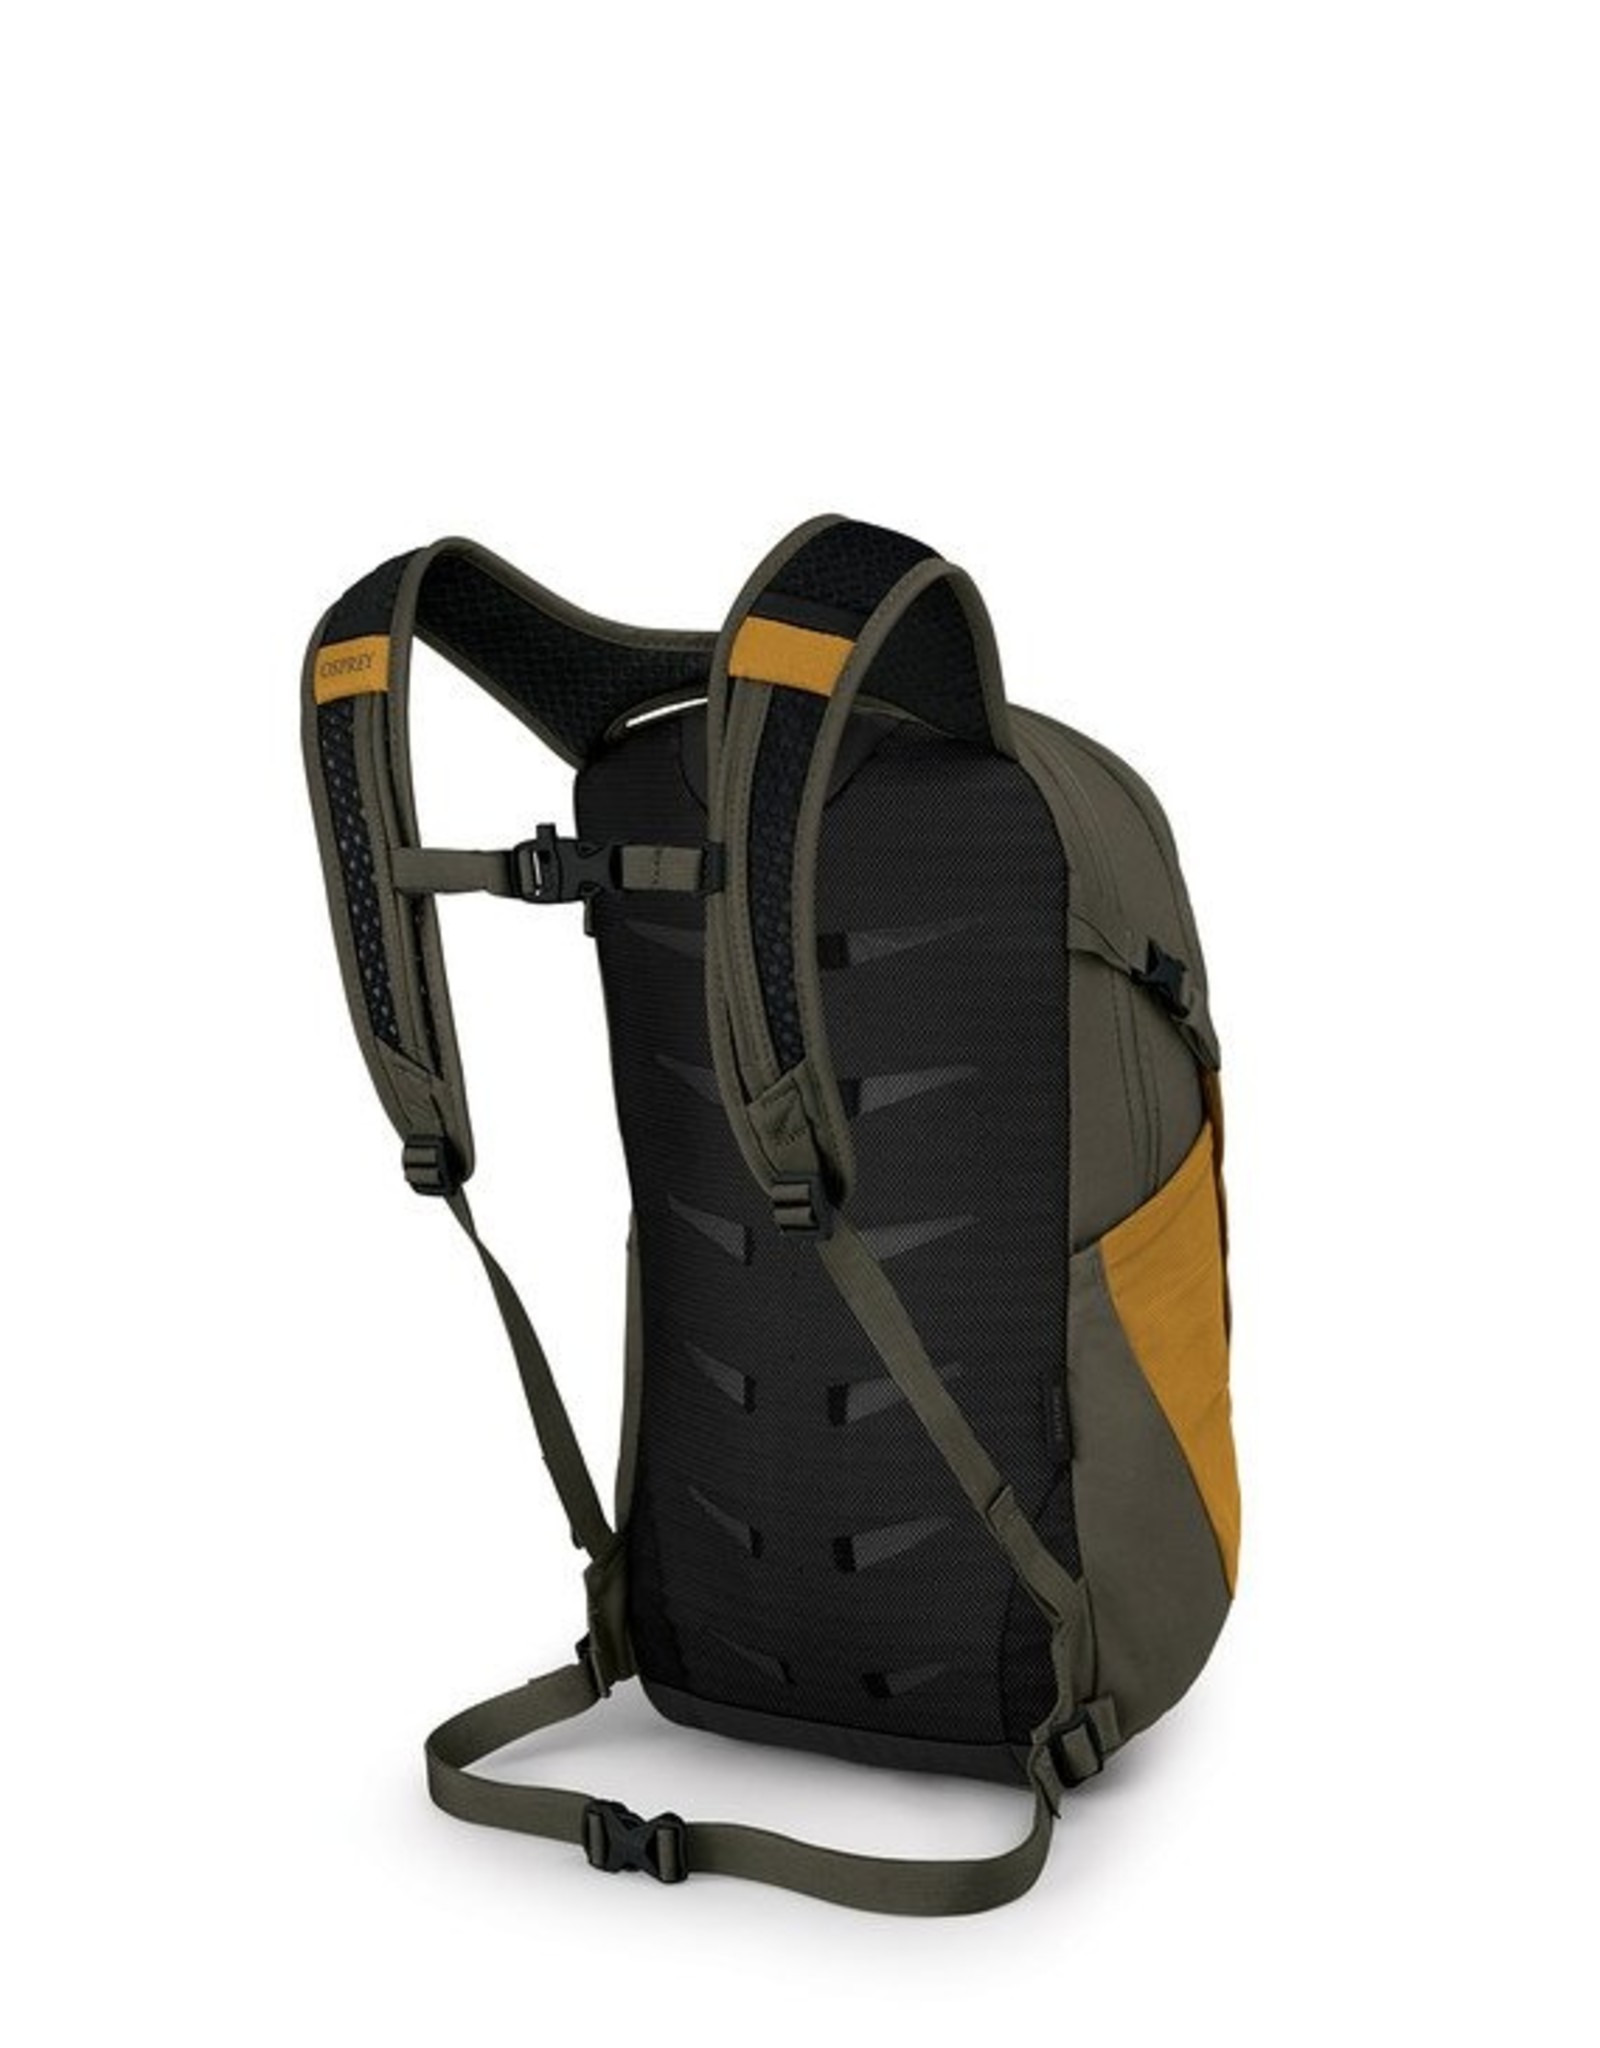 Osprey Osprey Daylite Backpack